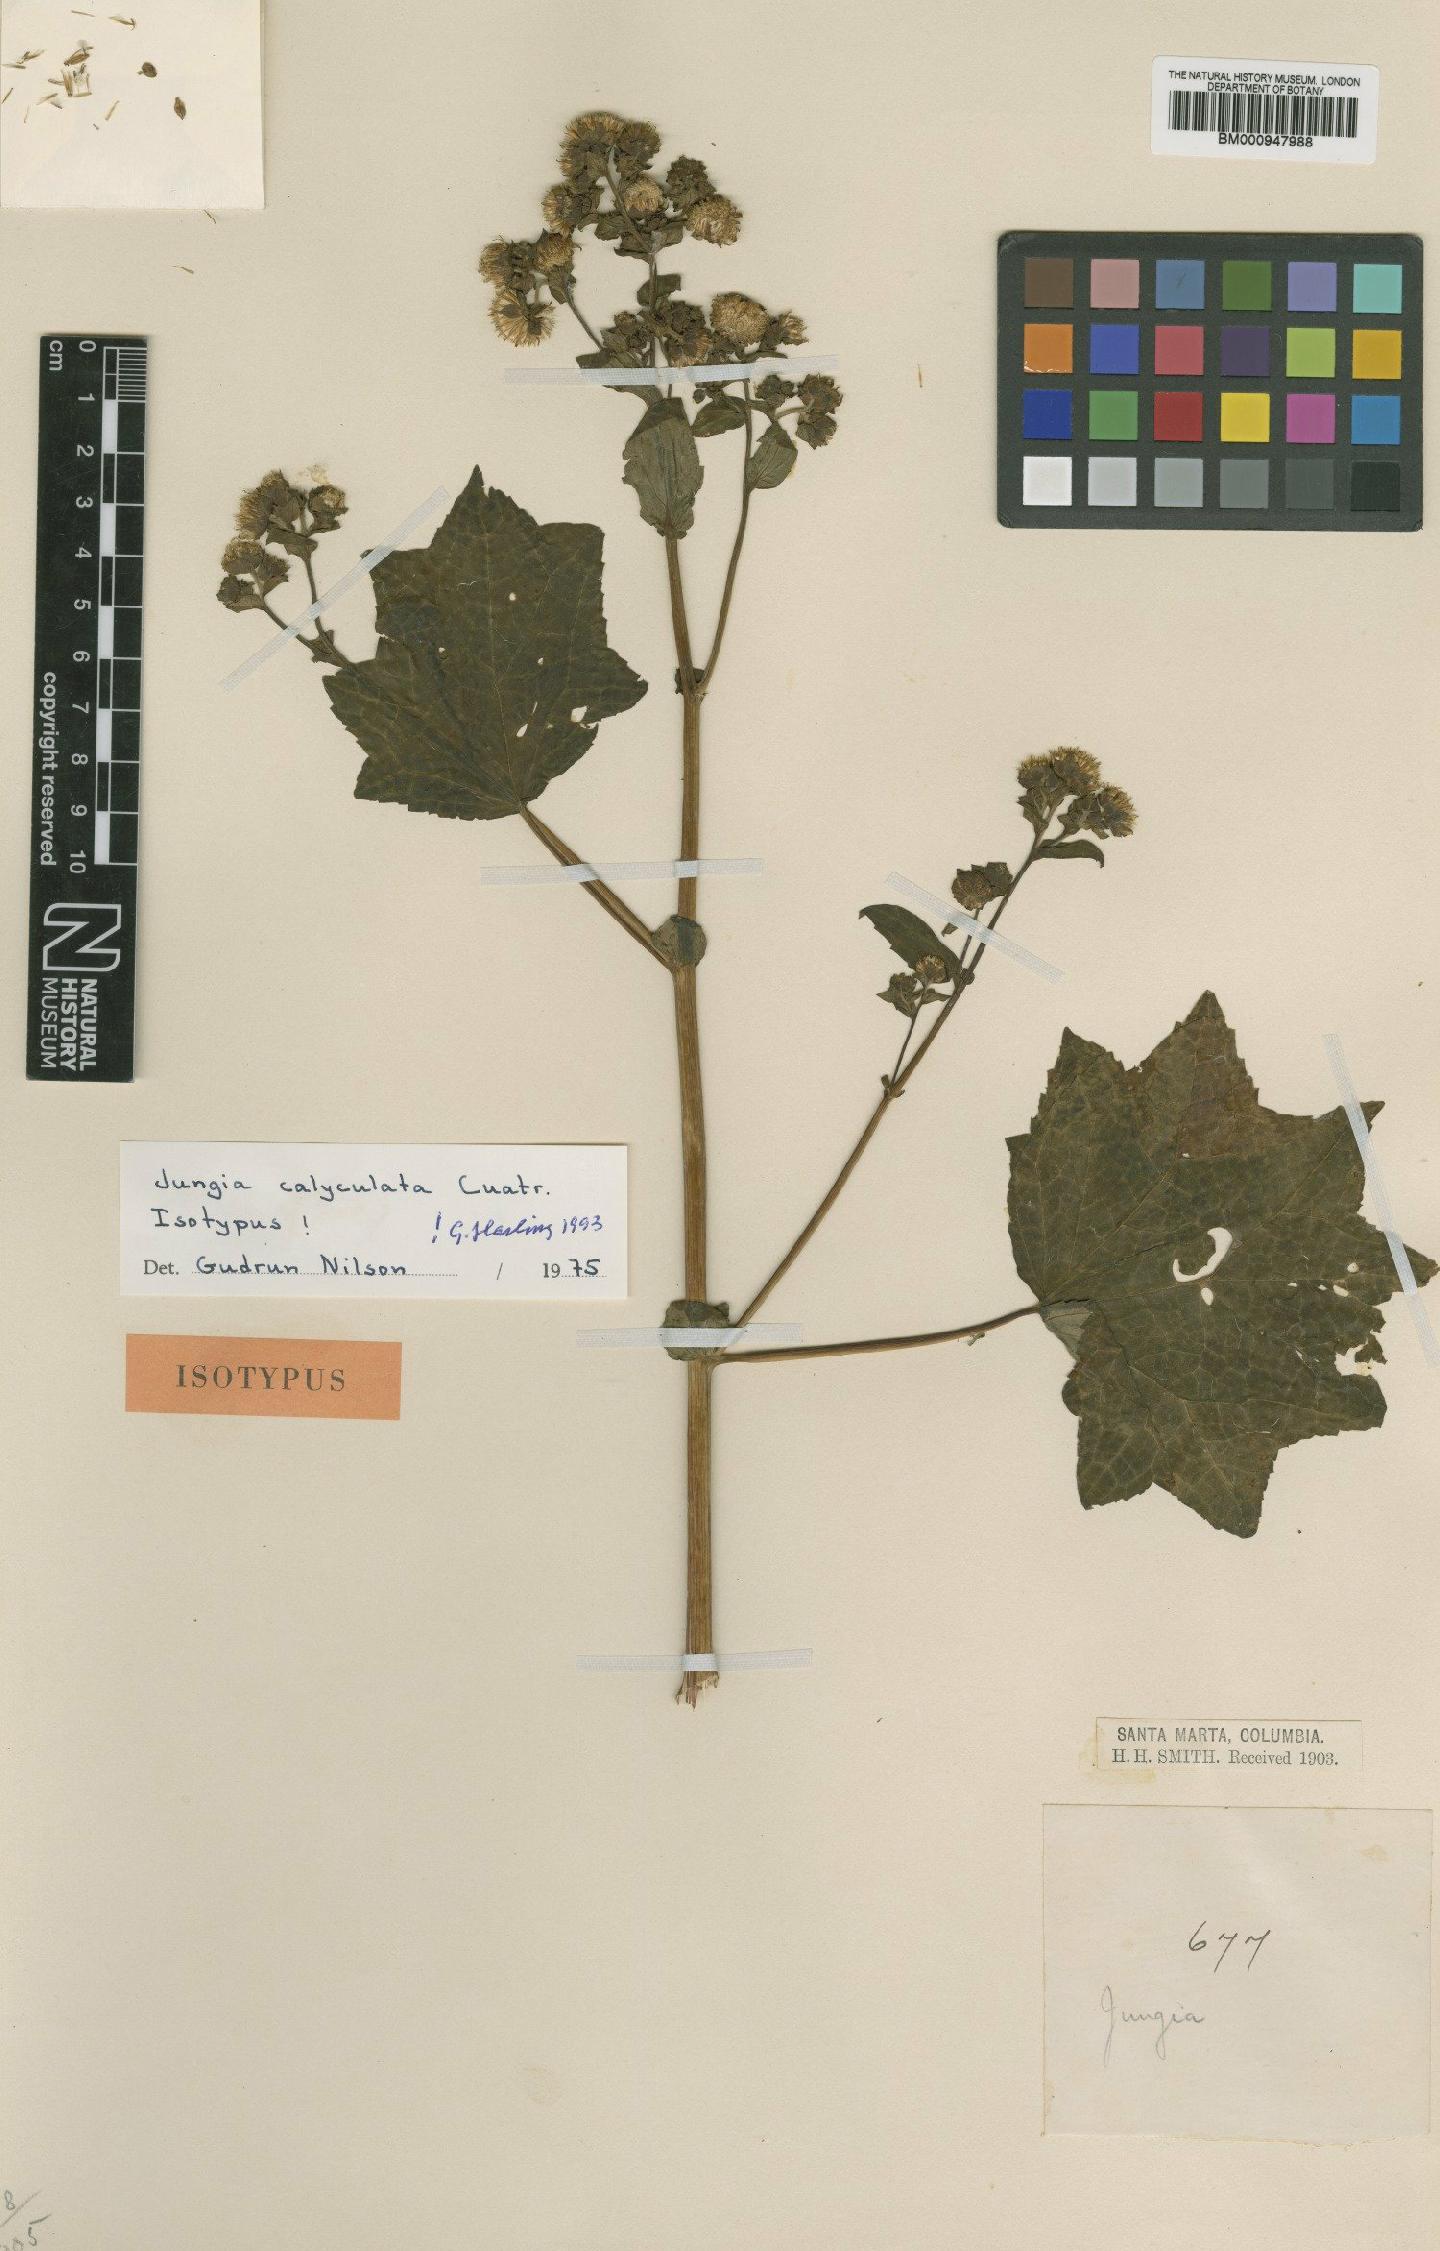 To NHMUK collection (Jungia calyculata Cuatrec.; Isotype; NHMUK:ecatalogue:621248)